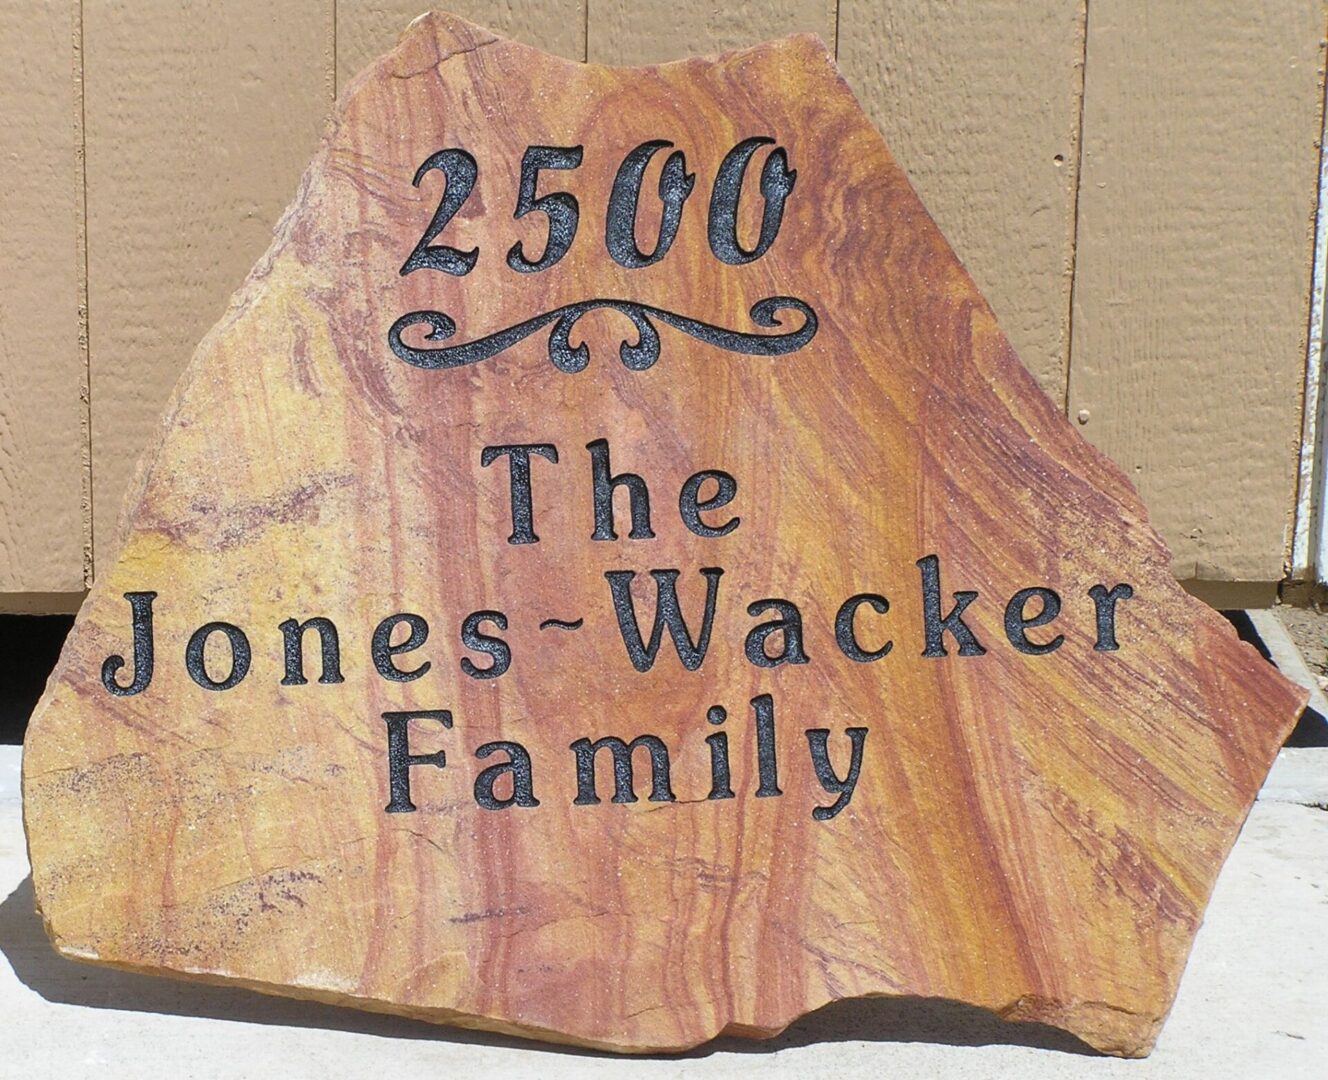 Flagston 2500 The Jones Wacker Family